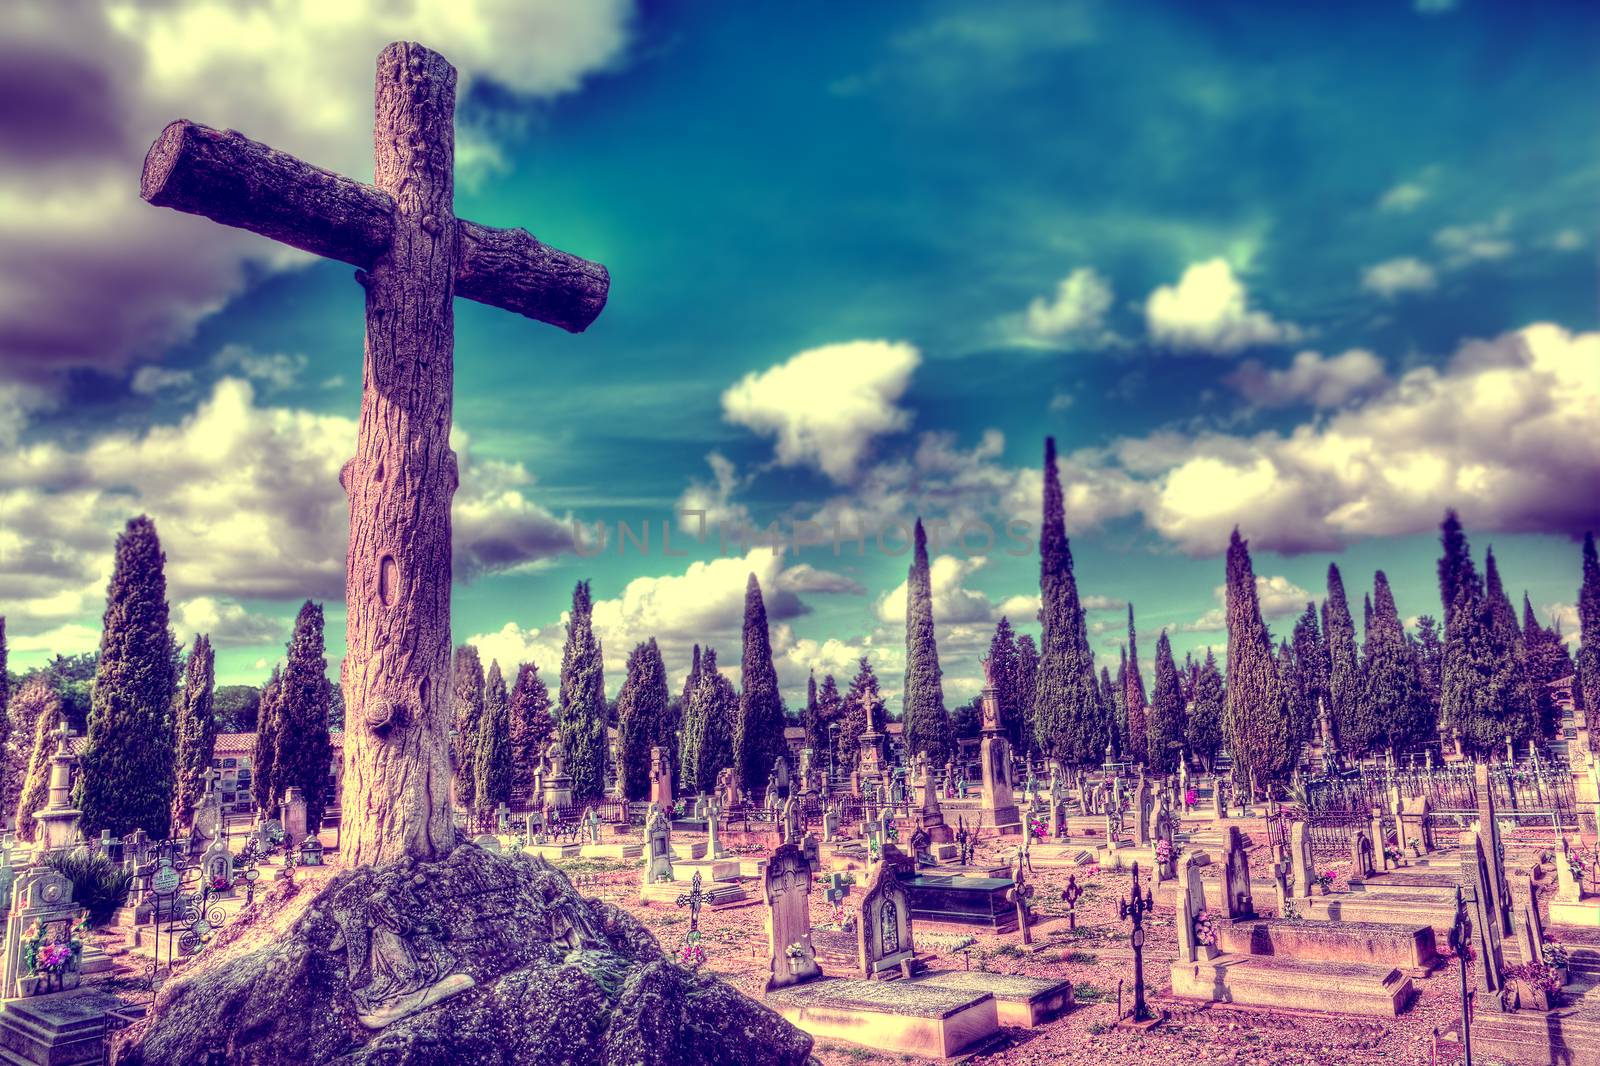 churchyard and Christian religion. by carloscastilla